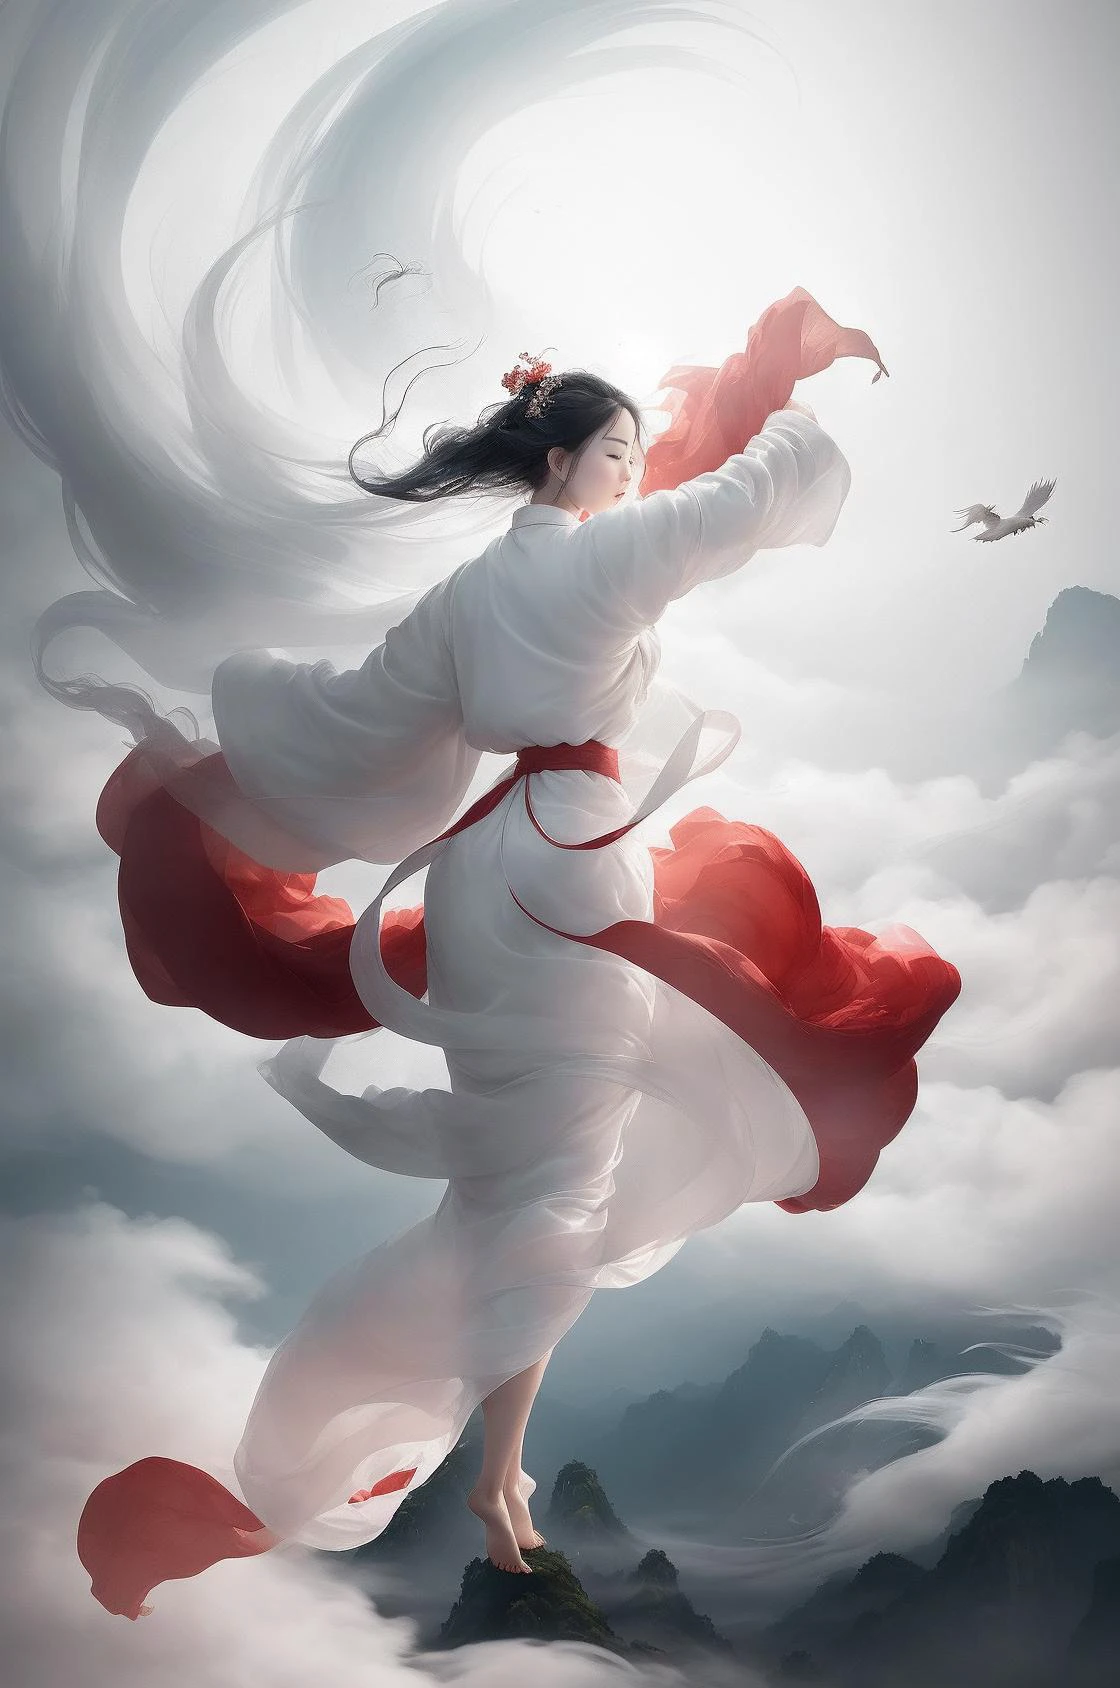 ผู้หญิง 1 คน,(ชุดจีนสีขาว),
ในฉากที่น่าจับตามอง, a beautiful woman adorned in a flowing ชุดจีนสีขาว soars through the misty clouds on the back of a majestic Chinese phoenix. ลมพัดเสื้อคลุมของเธอออกอย่างแผ่วเบา, เน้นความรู้สึกของการบินขณะที่พวกเขาสํารวจทิวทัศน์เมฆที่ไม่มีตัวตนอย่างสง่างาม.